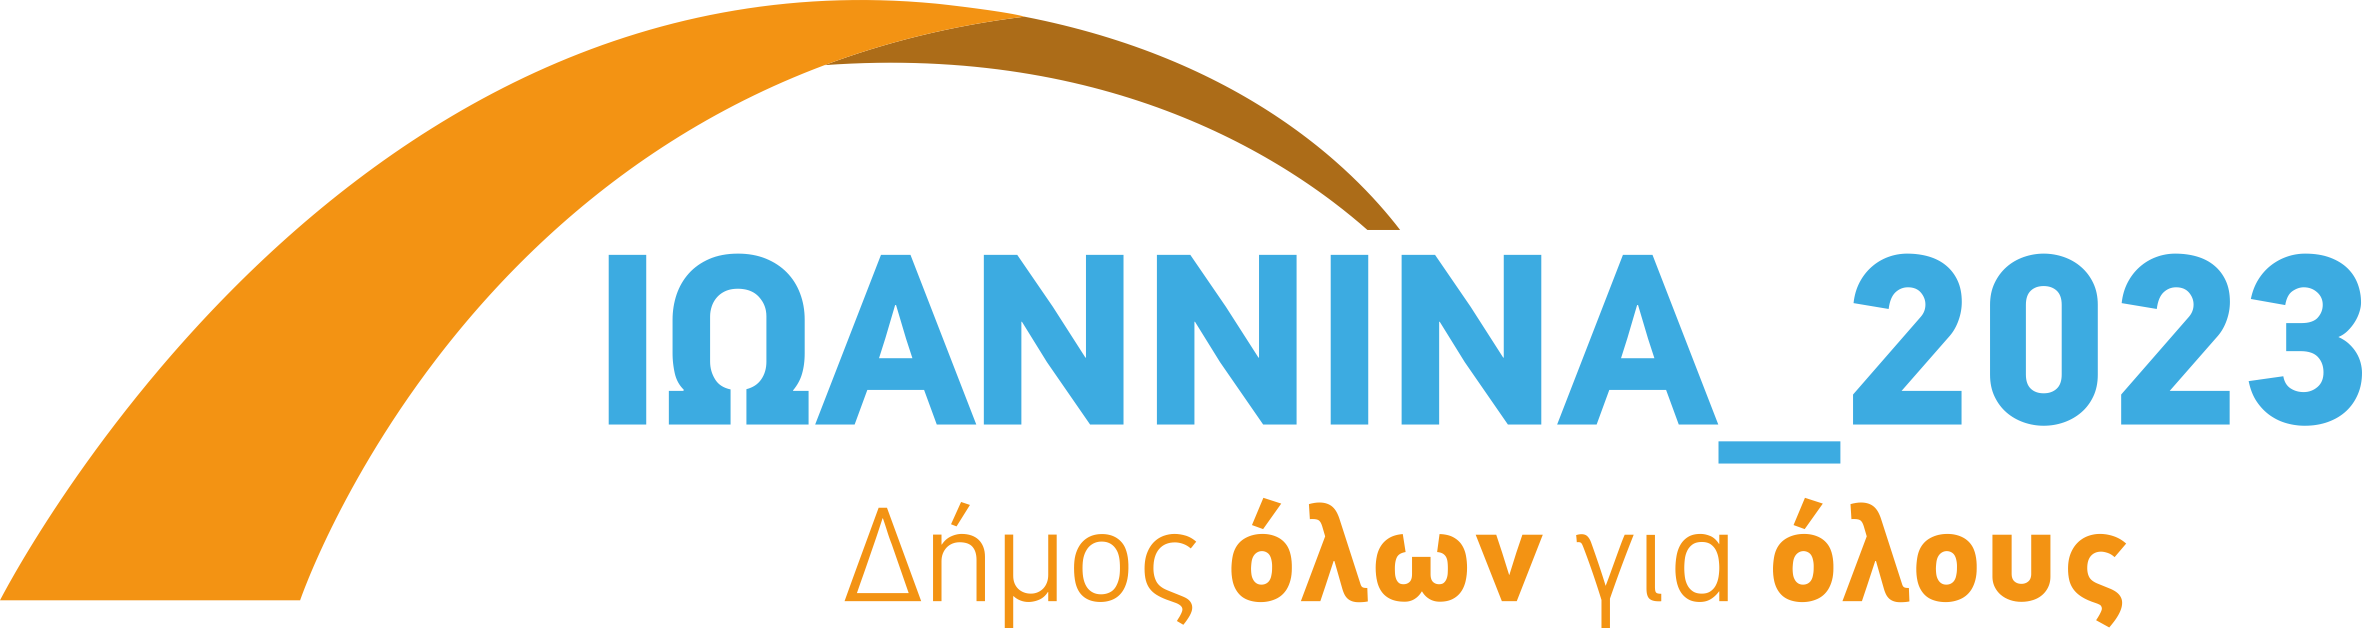 logo IOANNINA 2023 (300x80mm)